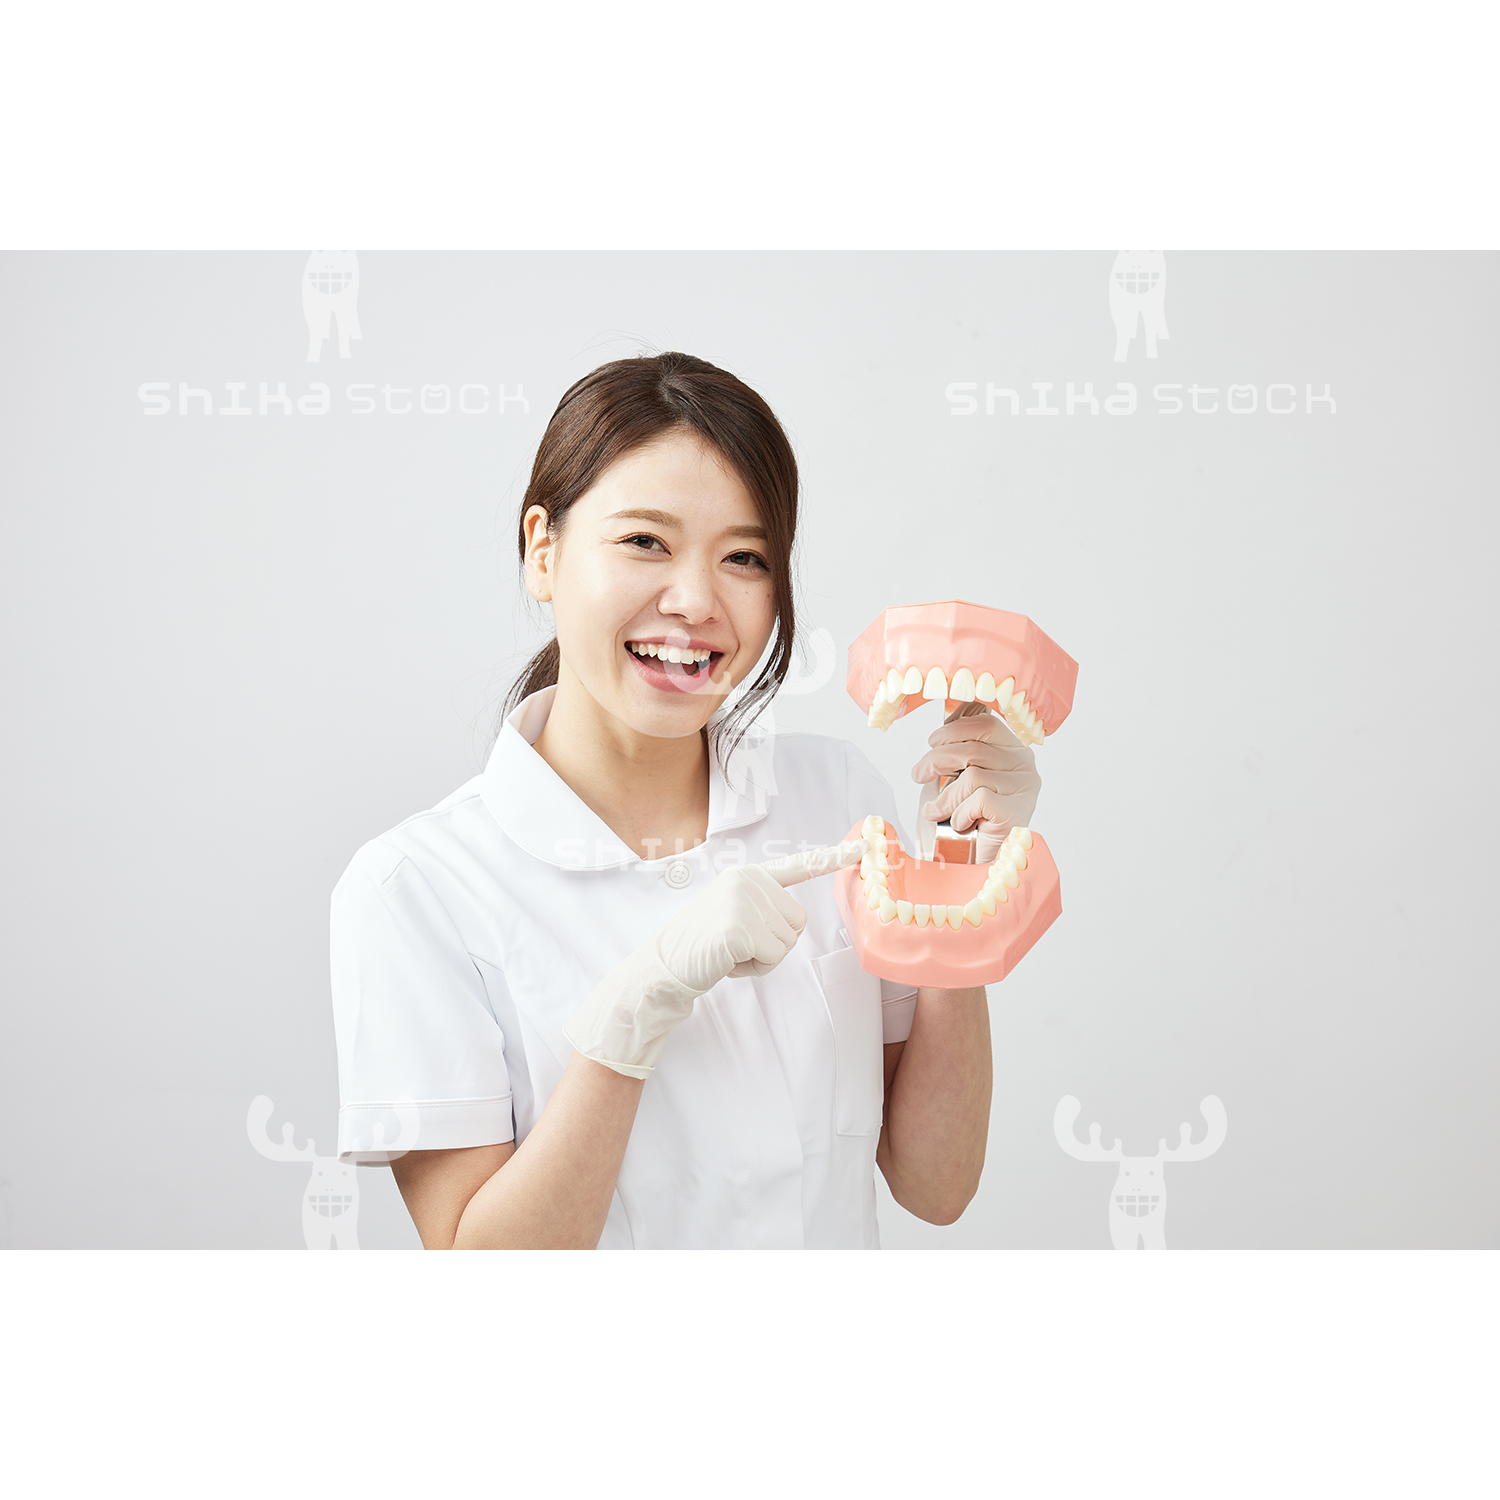 【Mサイズ】歯科衛生士と大きな歯の模型